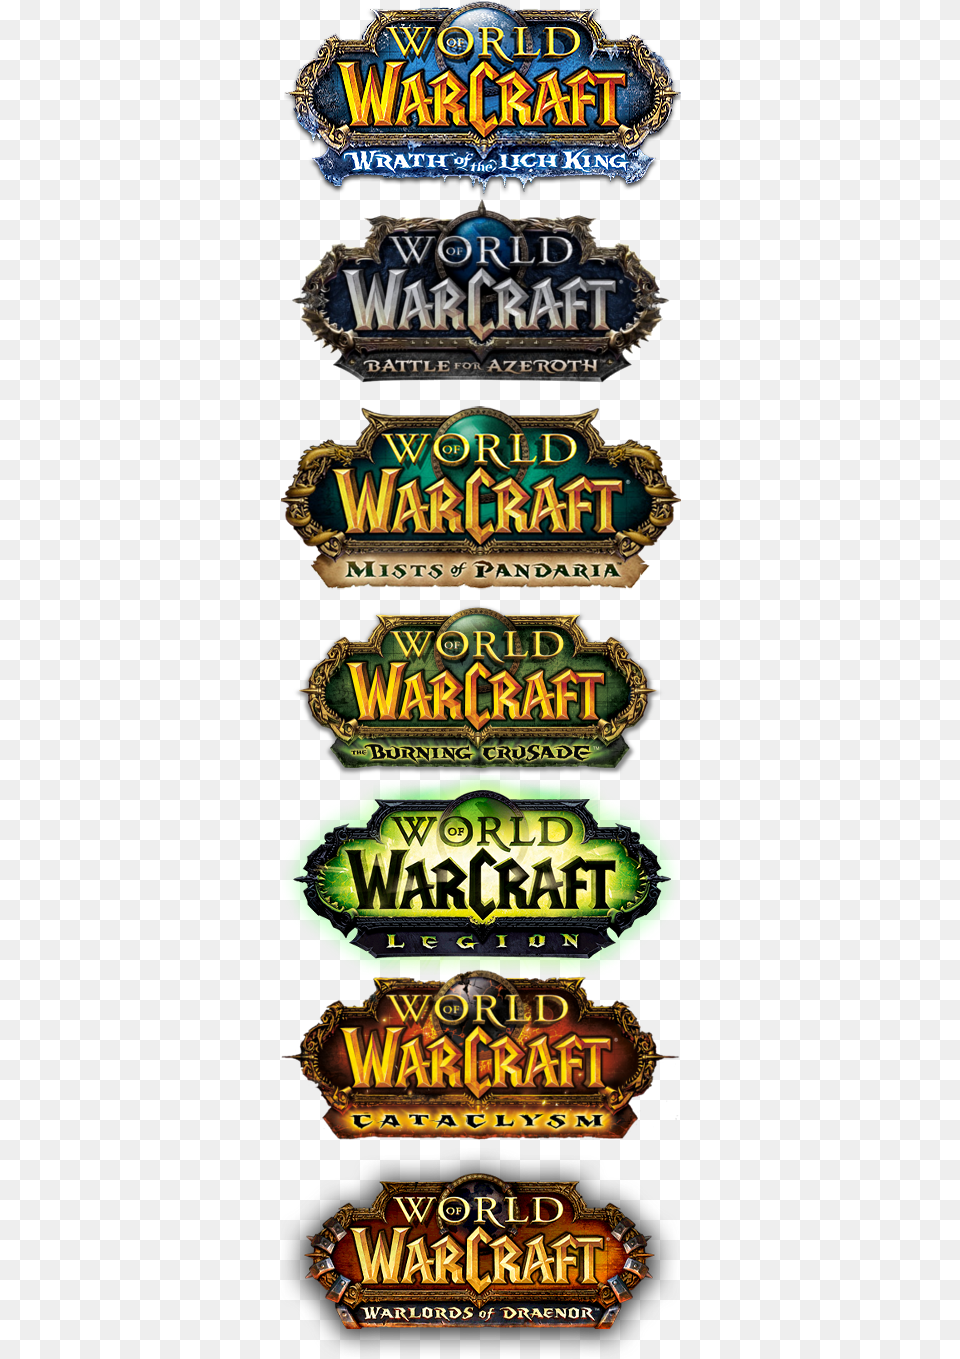 World Of Warcraft Expansion Logos, Advertisement, Poster, Gambling, Game Png Image